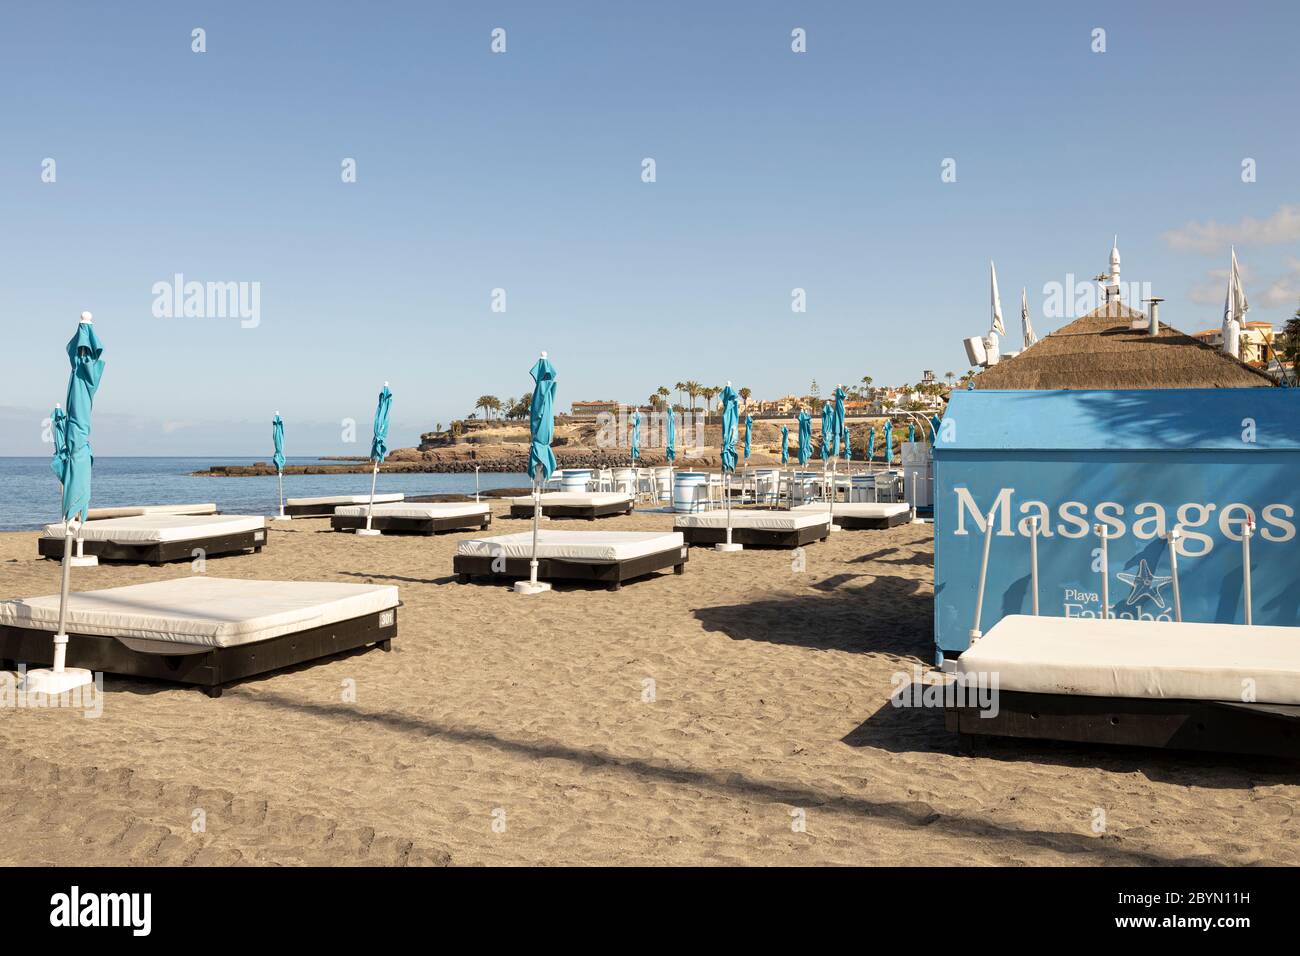 Strandgeschäfte werden nun mit strengen Hygienekontrollen für die wenigen Bewohner, Playa Fañabe, Costa adeje, Teneriffa, Kanarische Inseln, Spanien, eröffnet Stockfoto